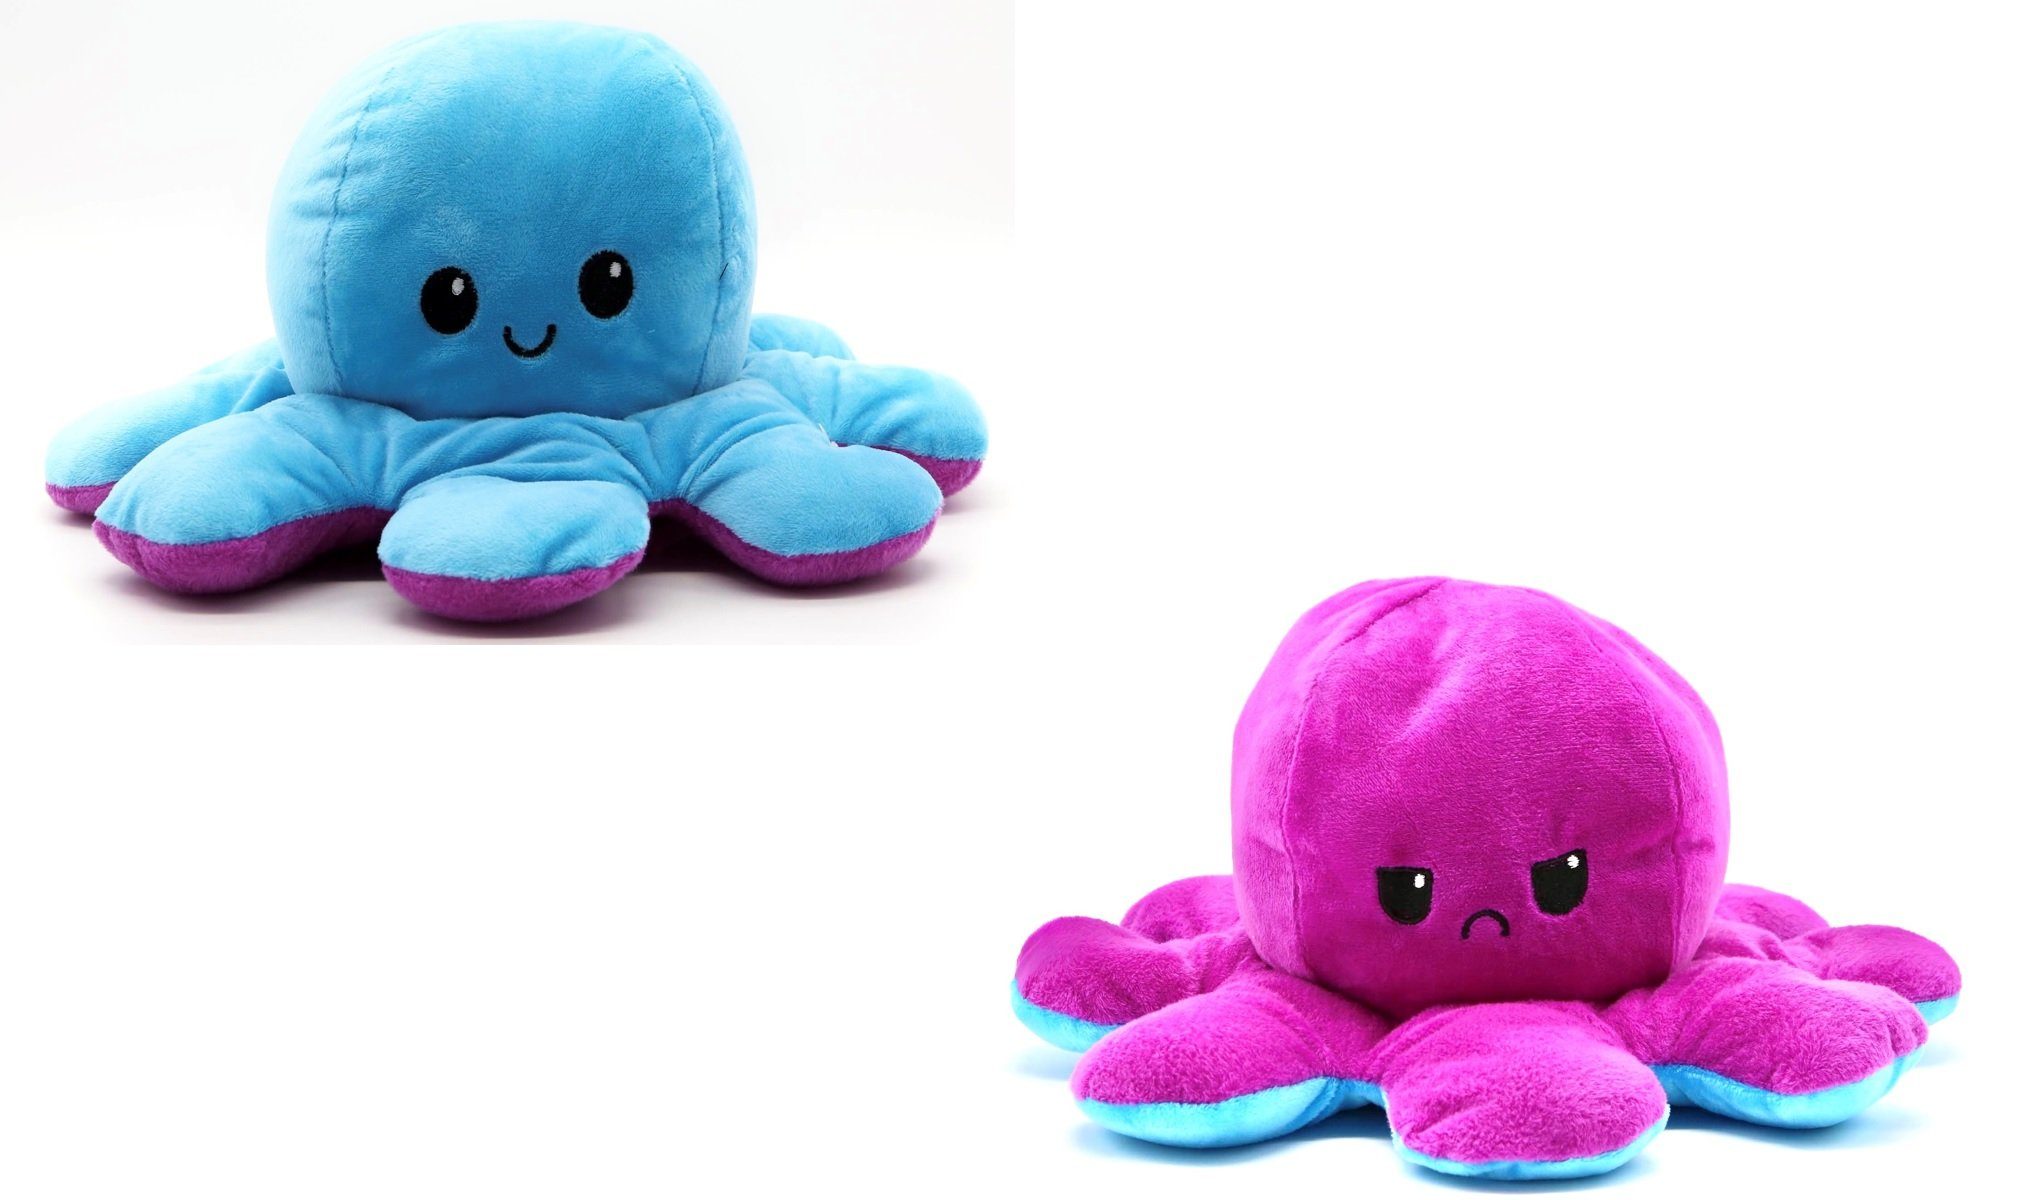 soma Kuscheltier Oktopus Reversible Rainbow Kuscheltier Wende Plüschtier  Octopus groß, Super weicher Plüsch Stofftier Kuscheltier für Kinder zum  spielen